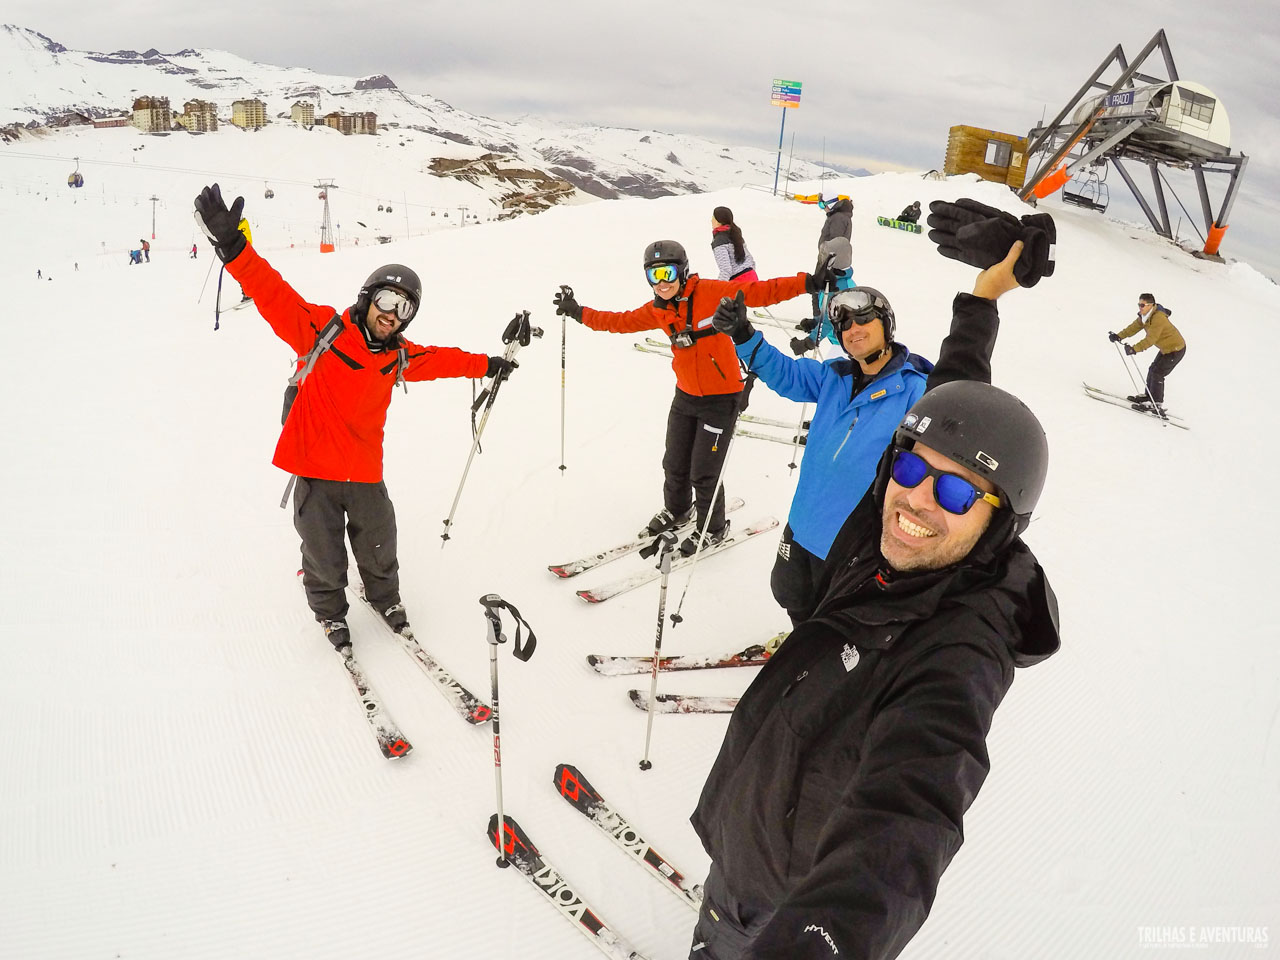 Esquiando com os amigos no Valle Nevado